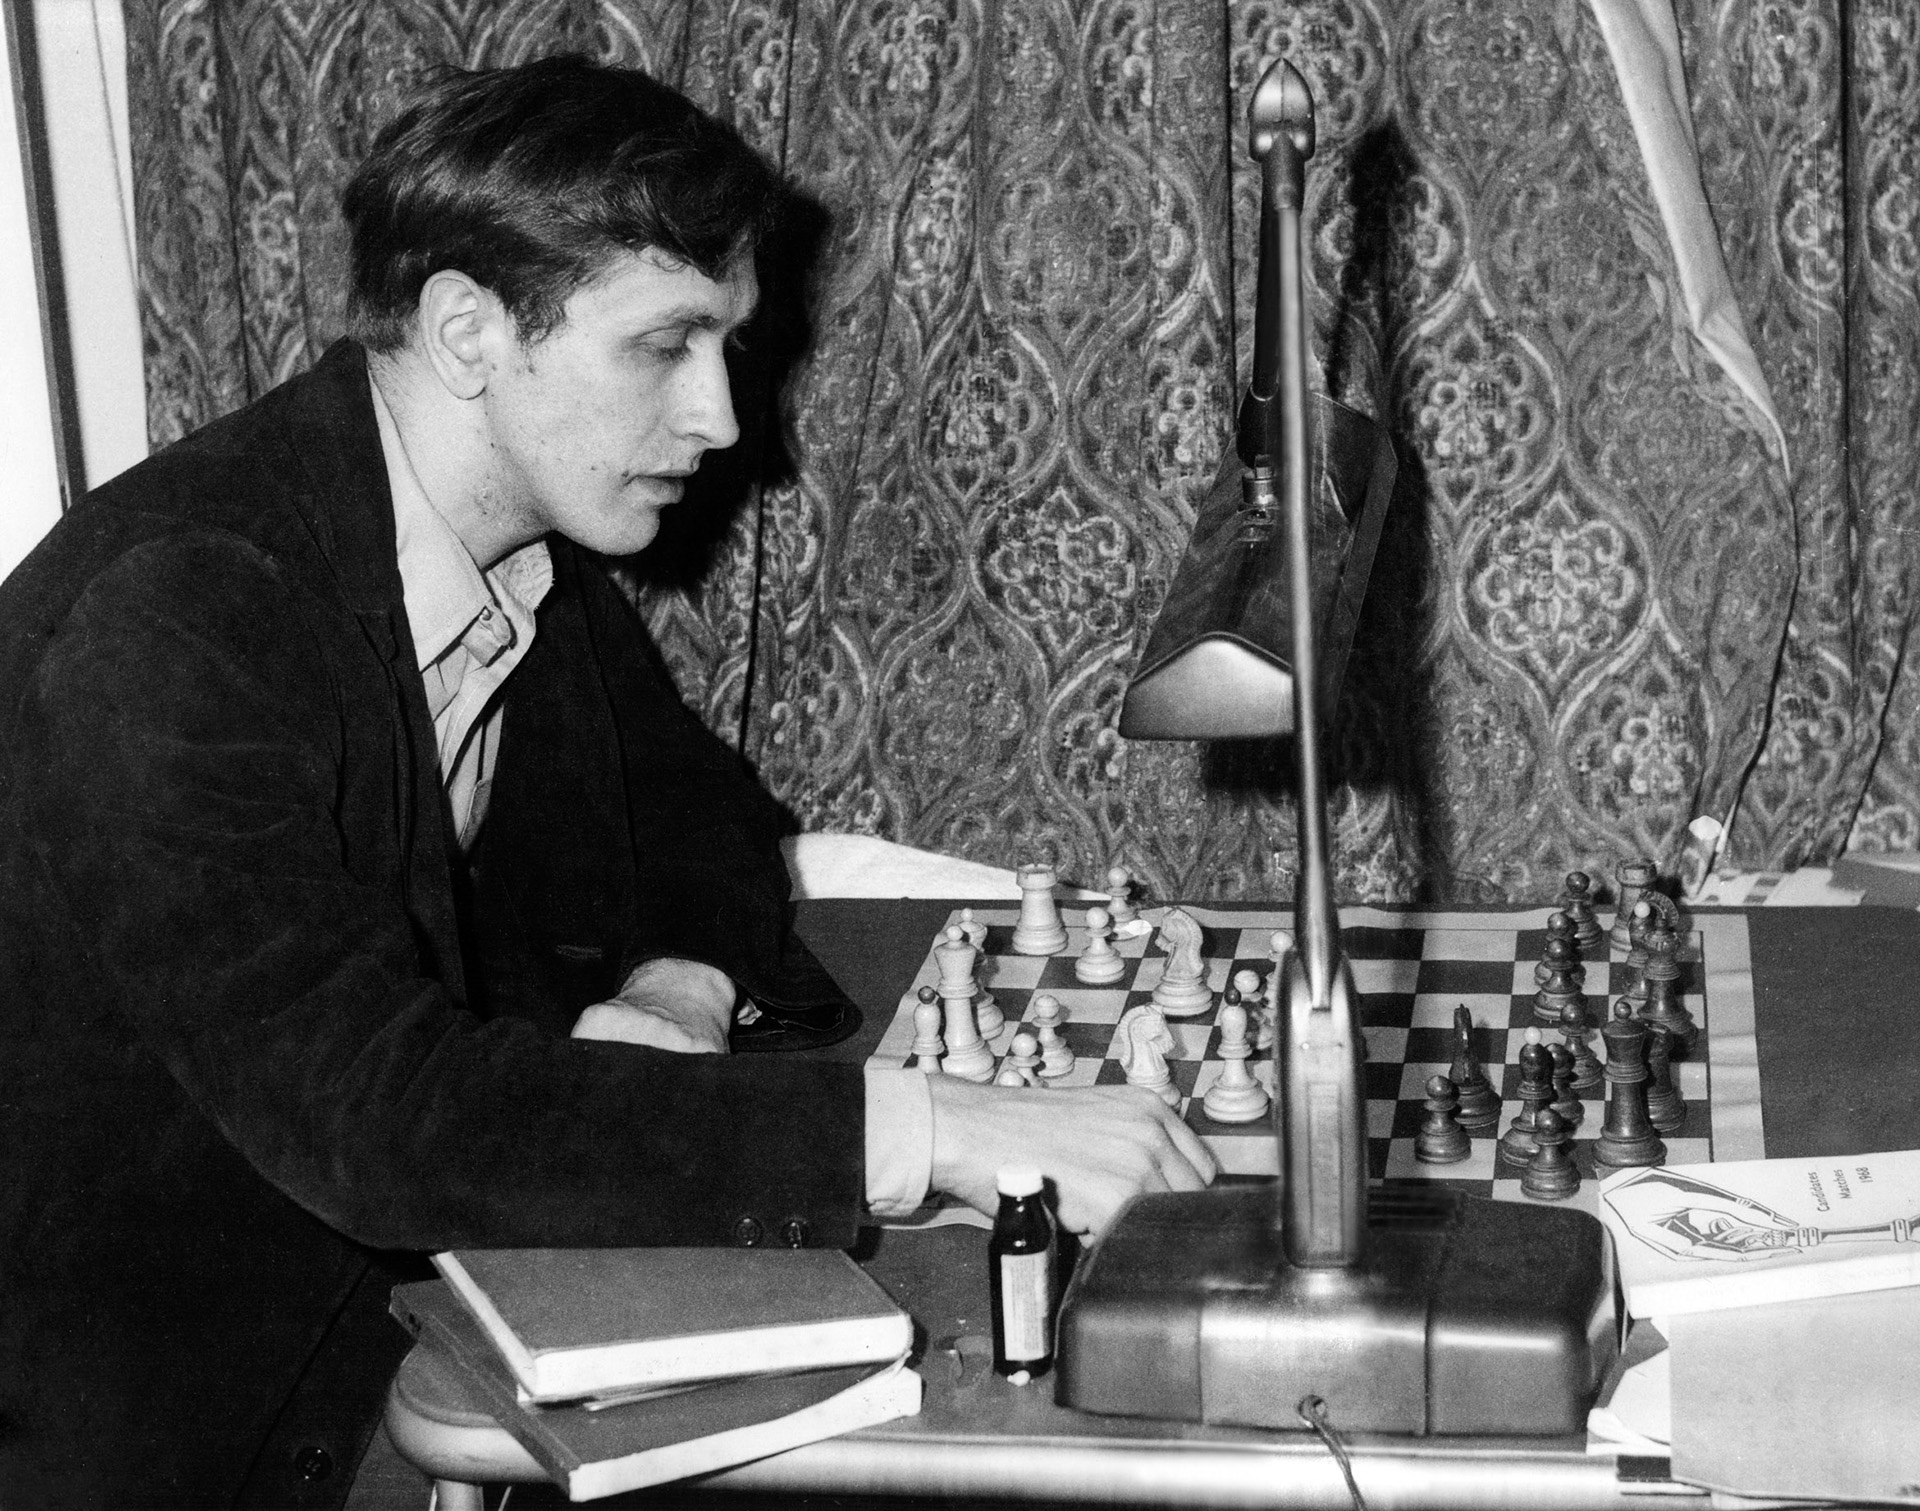 Bobby Fischer realizó innumerables viajes alrededor de su país durante su adolescencia para sumar horas de competición. Su primer gran cheque fue de 750 dólares